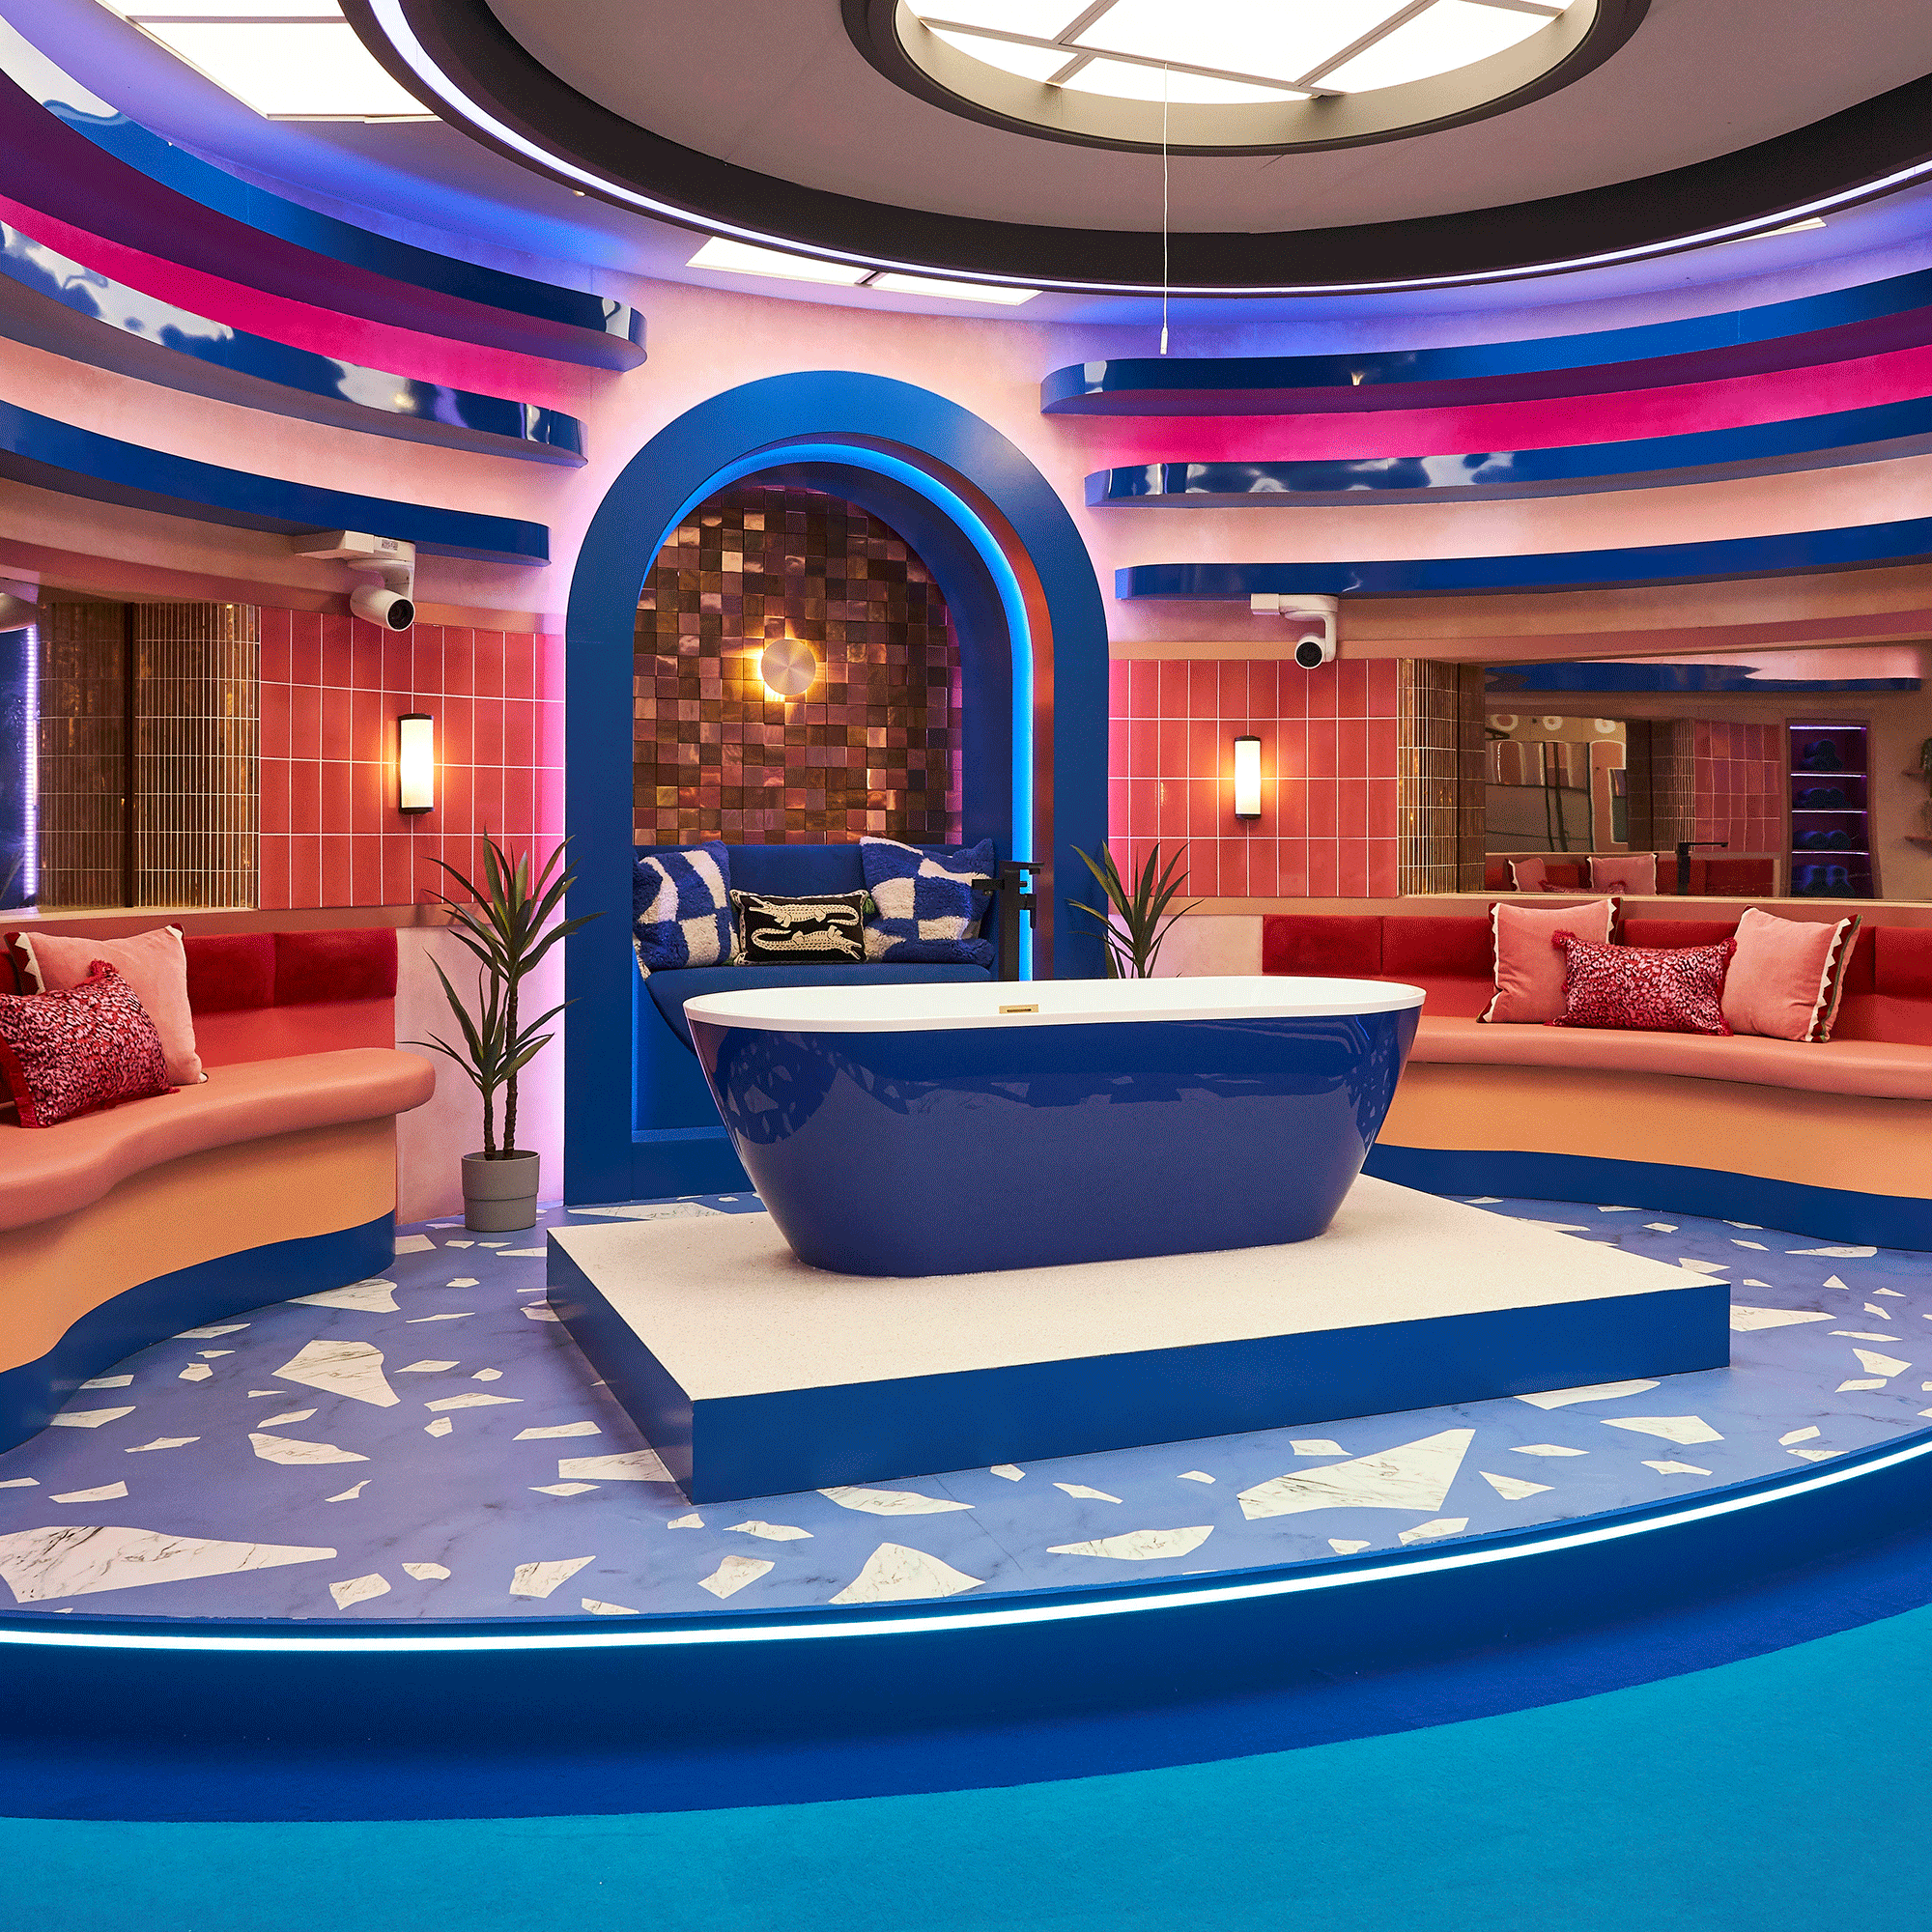 Big Brother house bathroom with blue bathtub